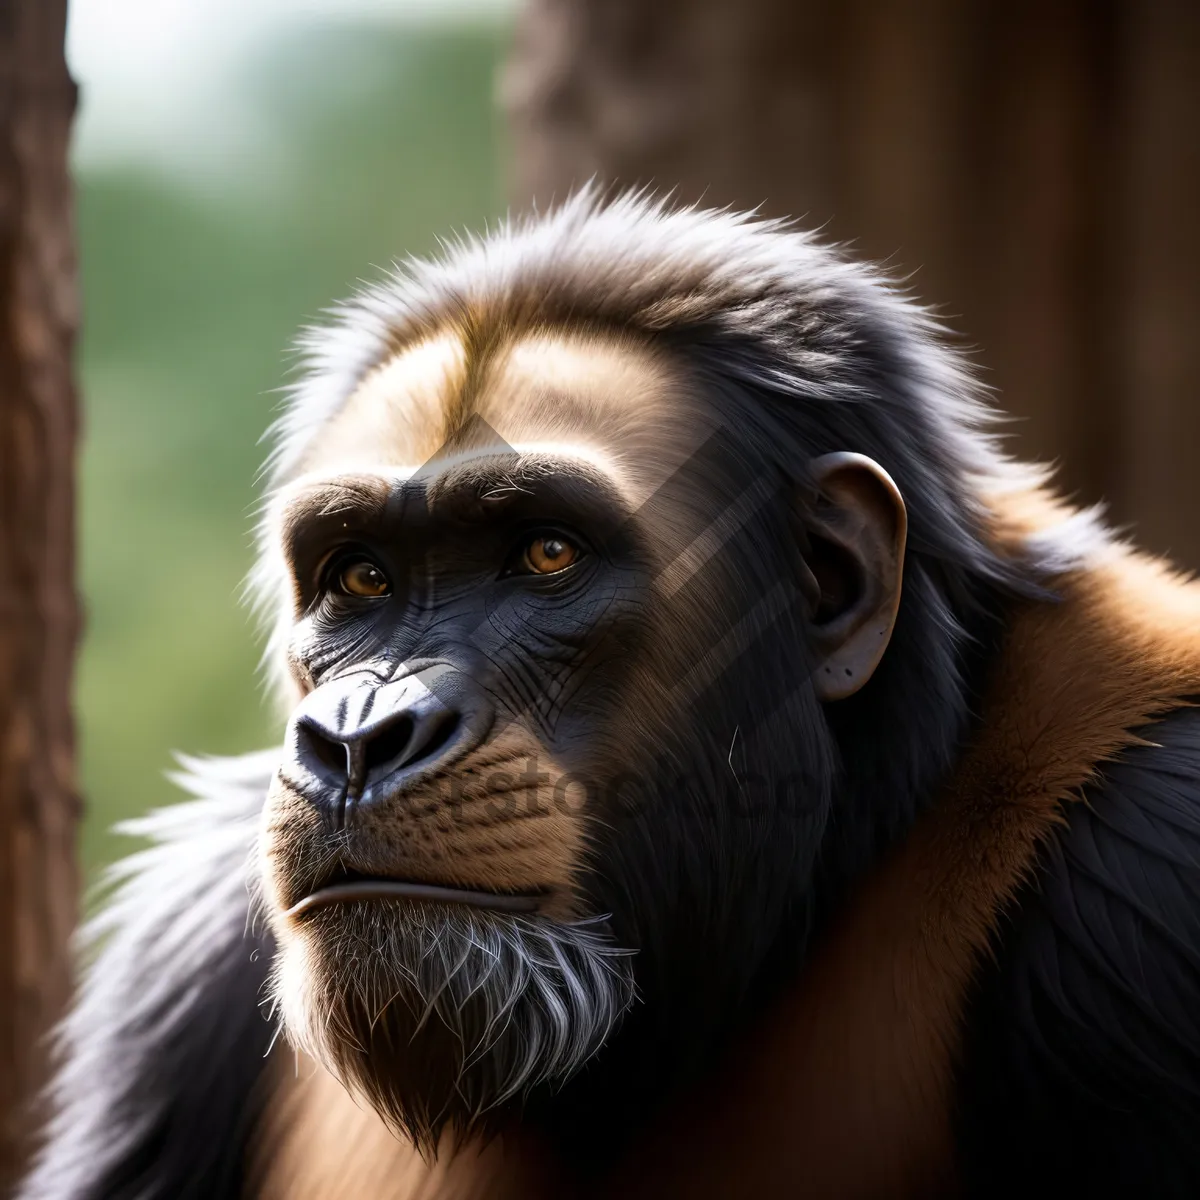 Picture of Wild Primate Encounter: A Majestic Chimpanzee in the Jungle